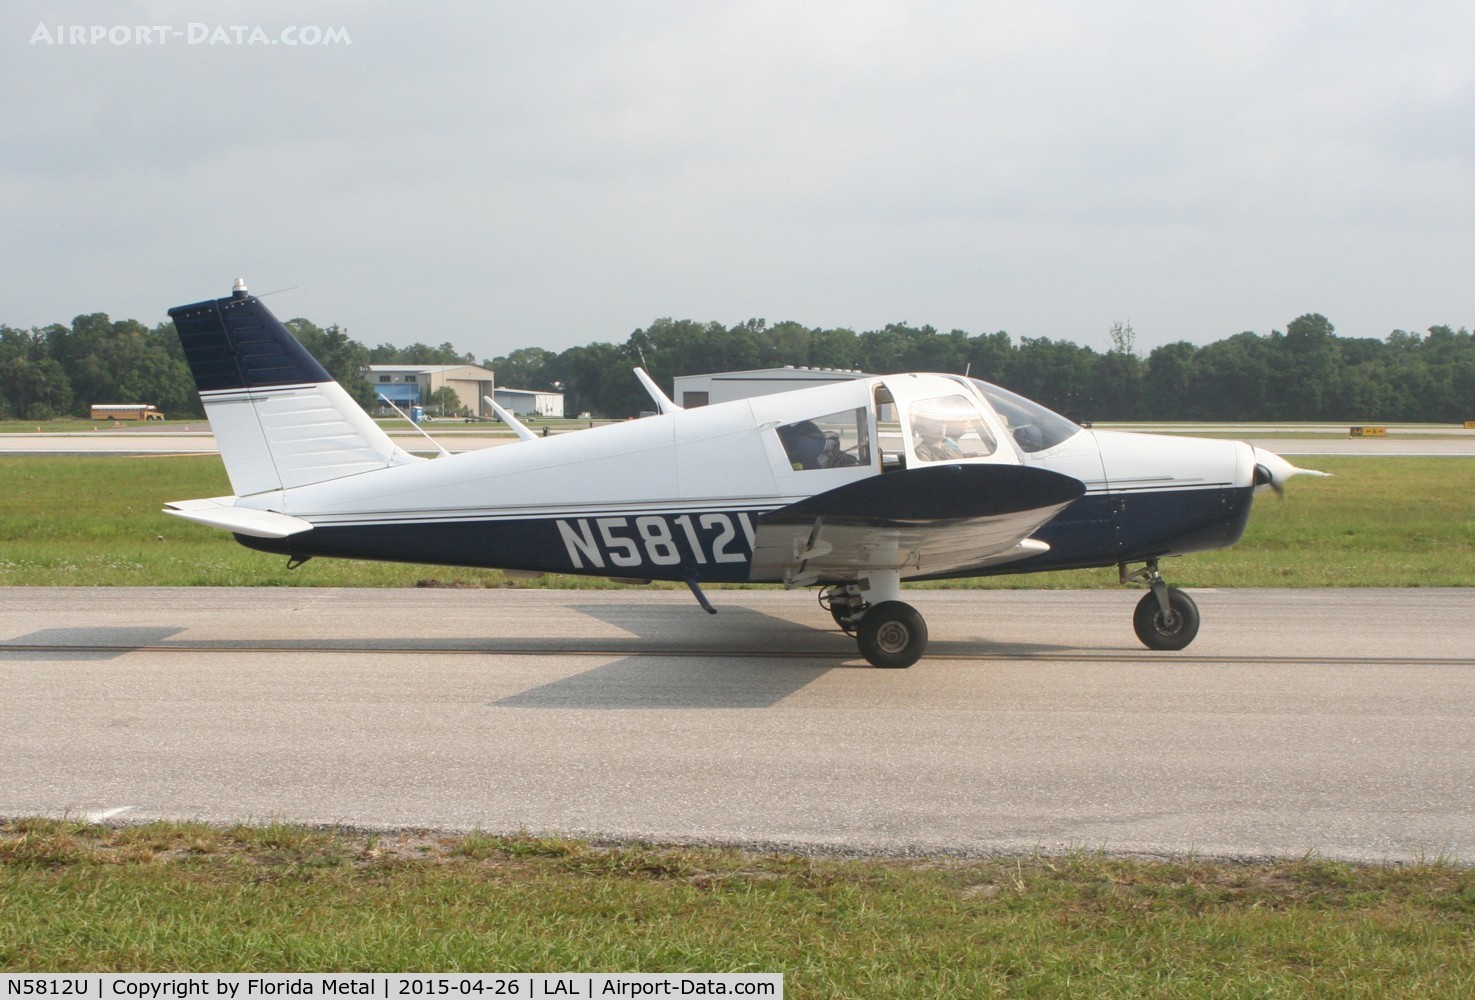 N5812U, 1969 Piper PA-28-140 Cherokee C/N 28-26641, PA-28-140